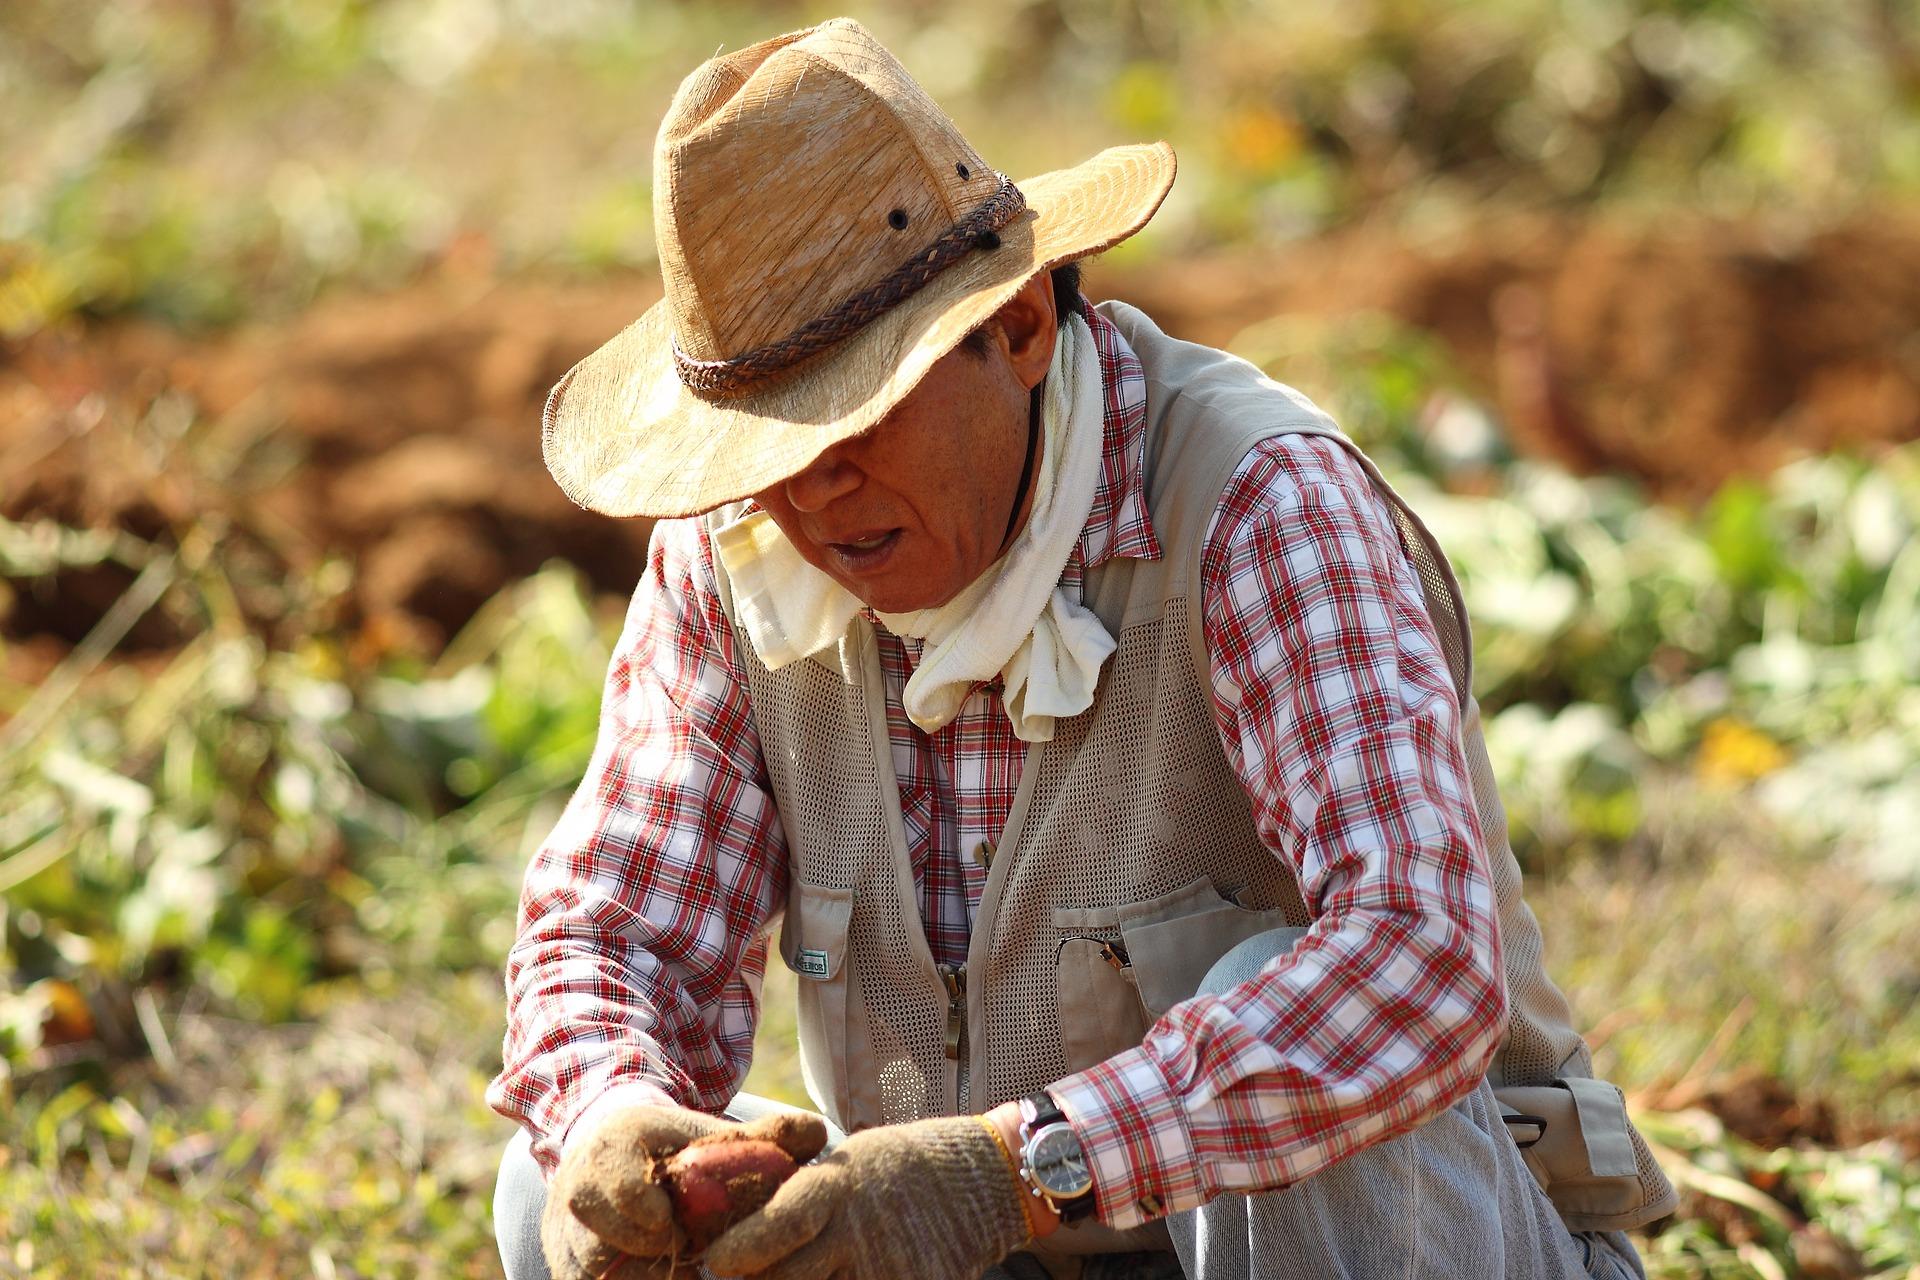  Farmer inspecting harvest in a field. 